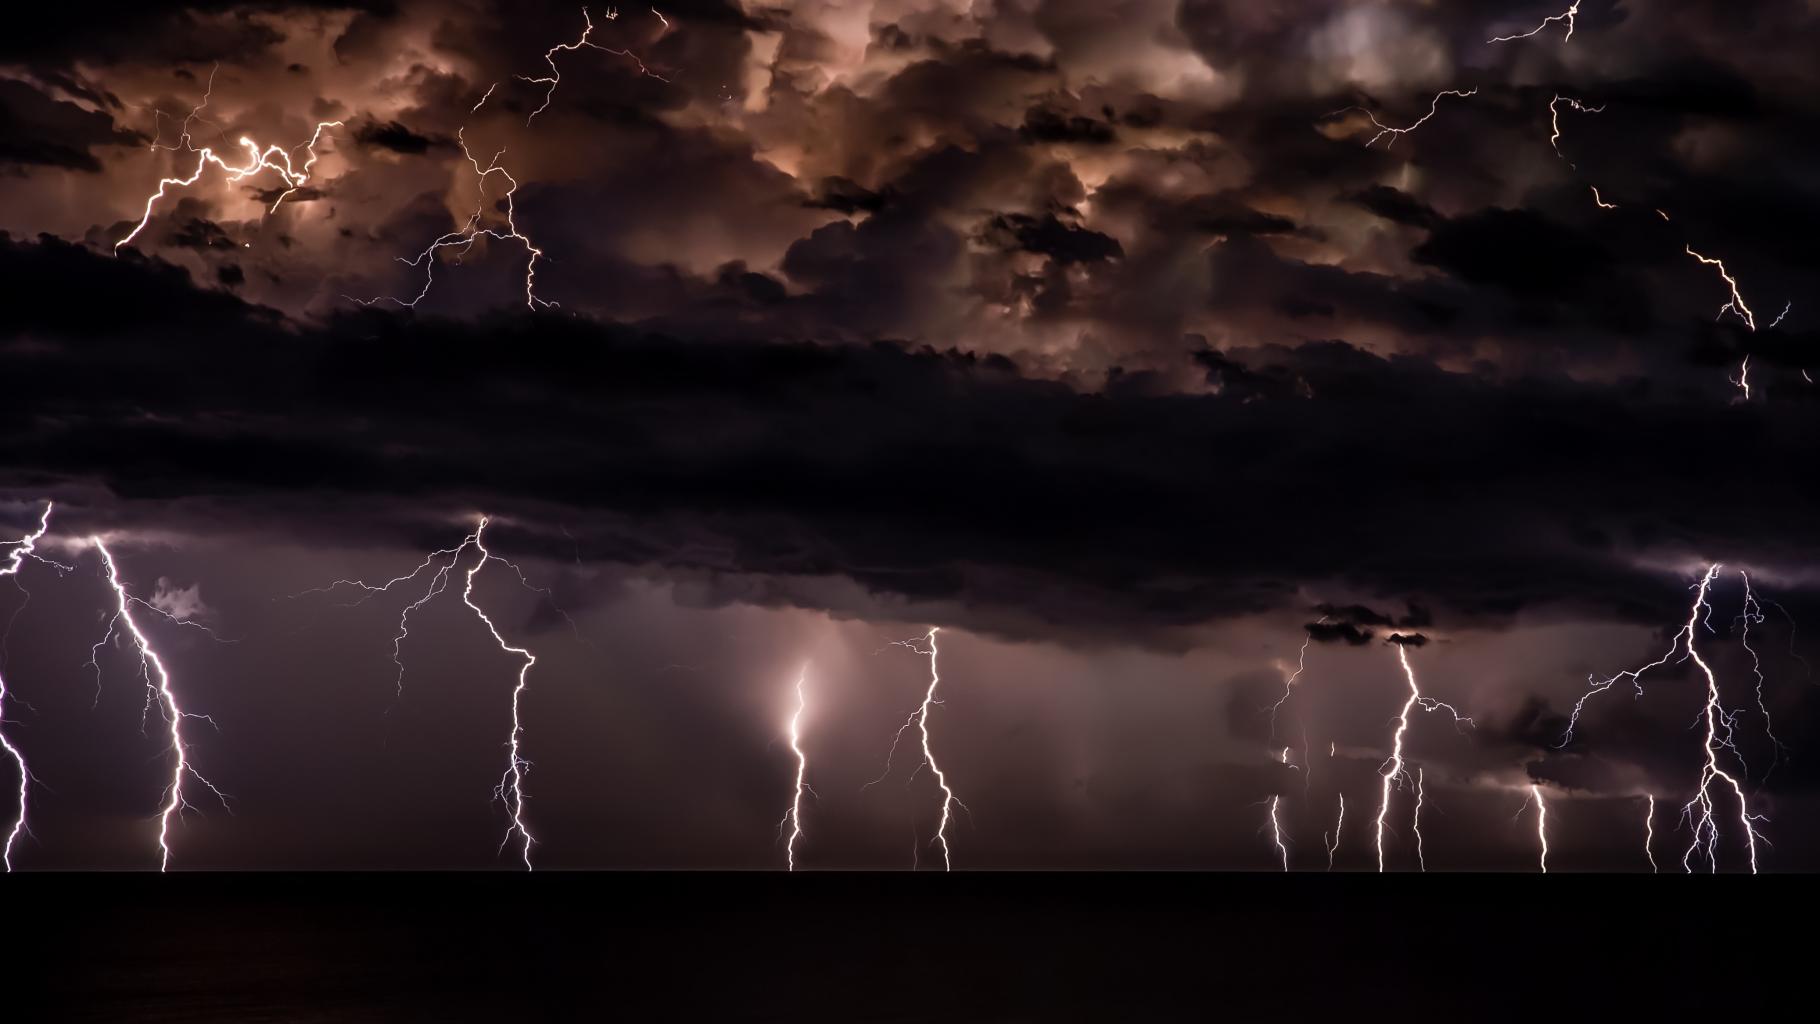 Weltuntergangsstimmung: Ein Unwetter mit vielen Blitzen